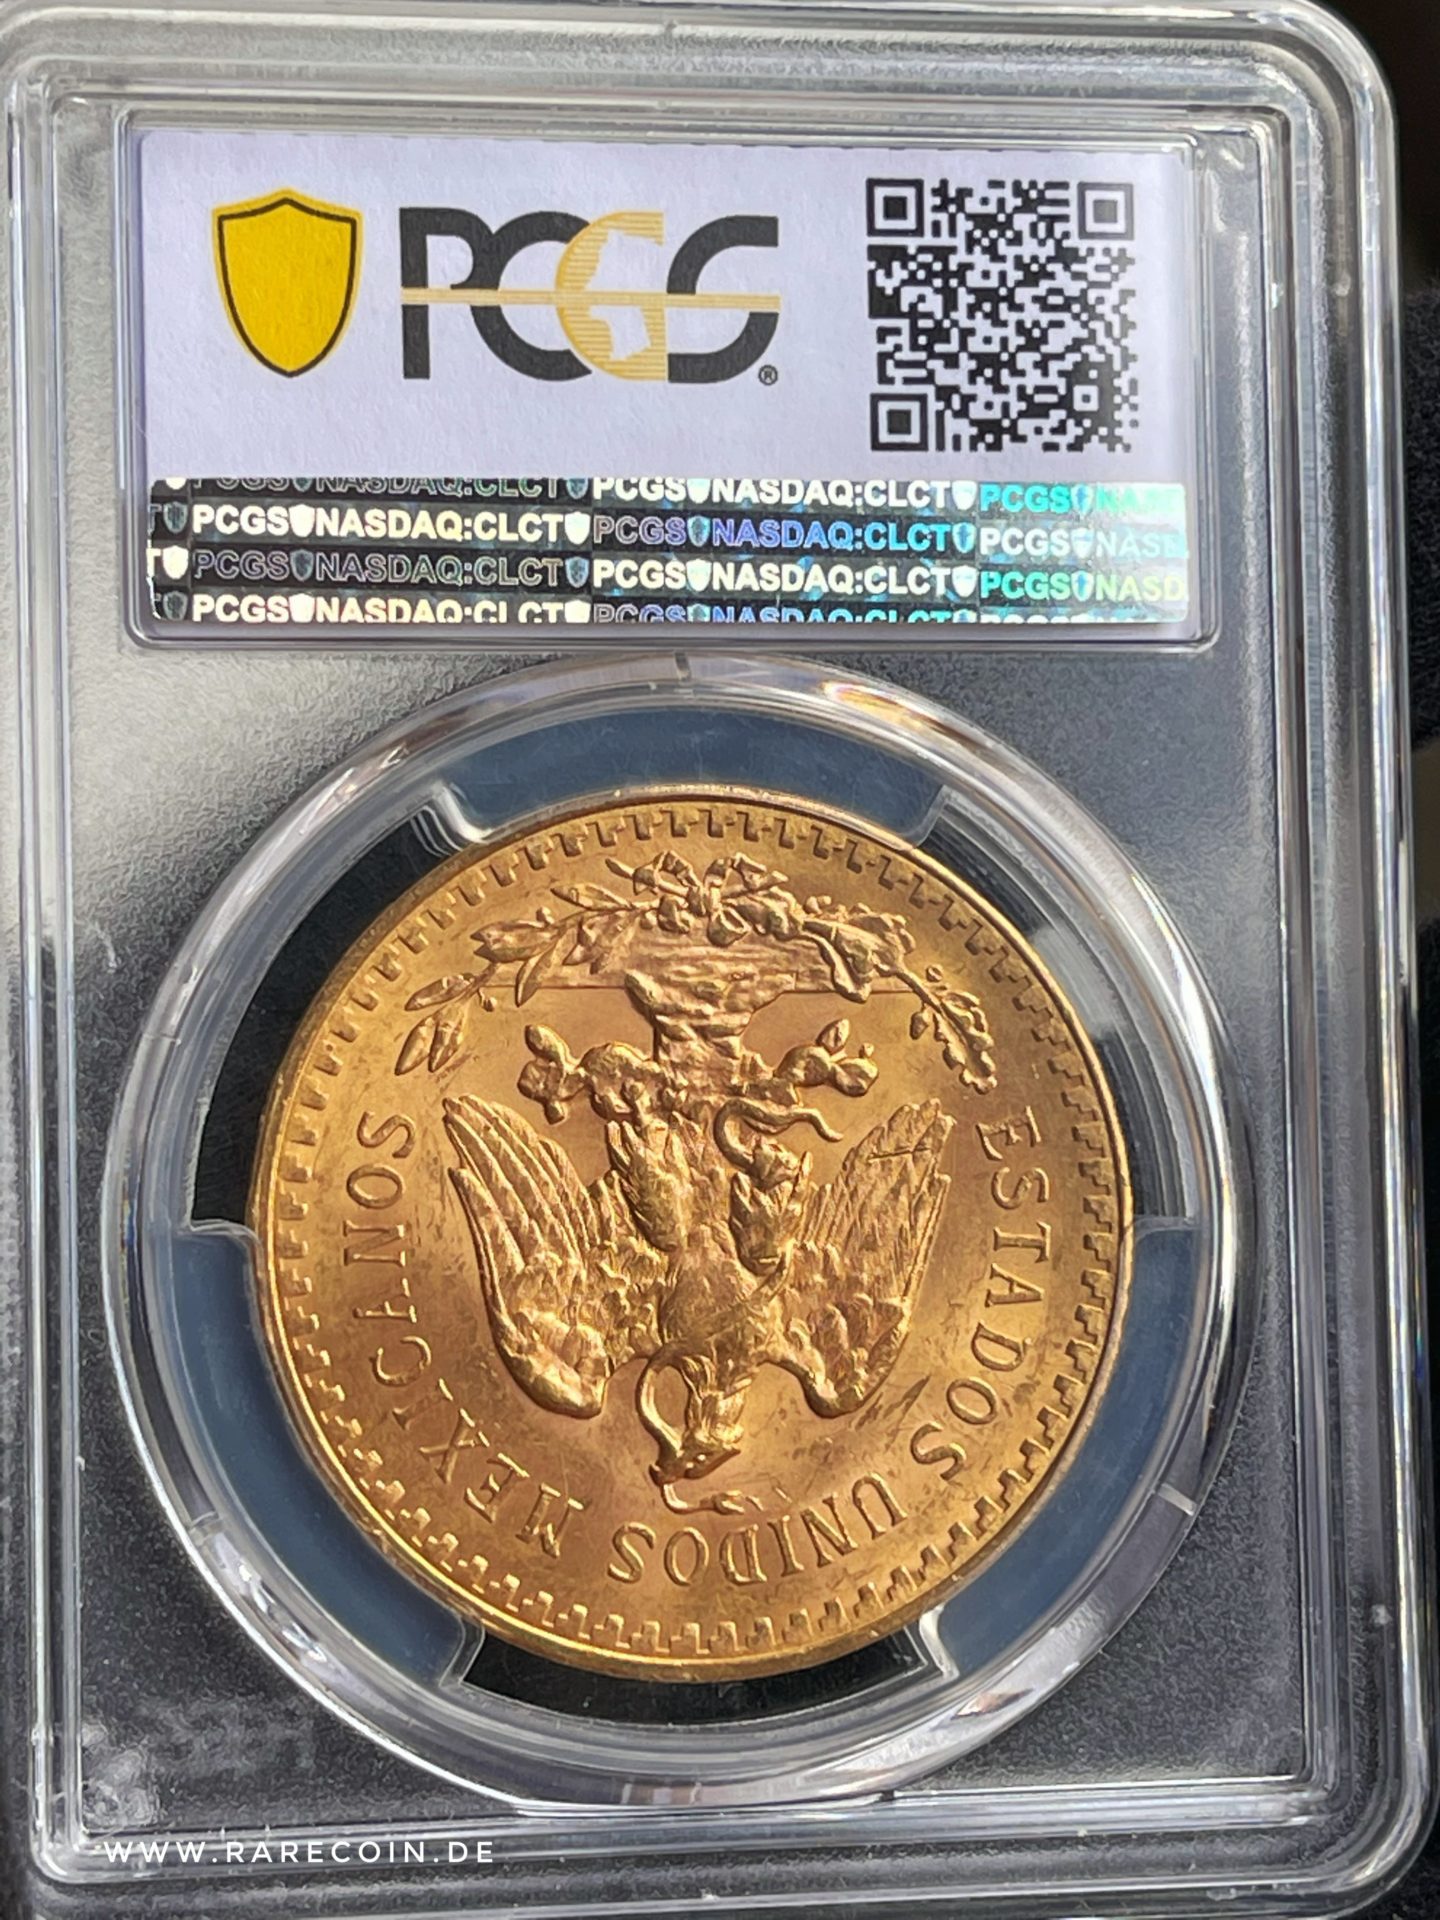 50 pesos 1928 centenario oro